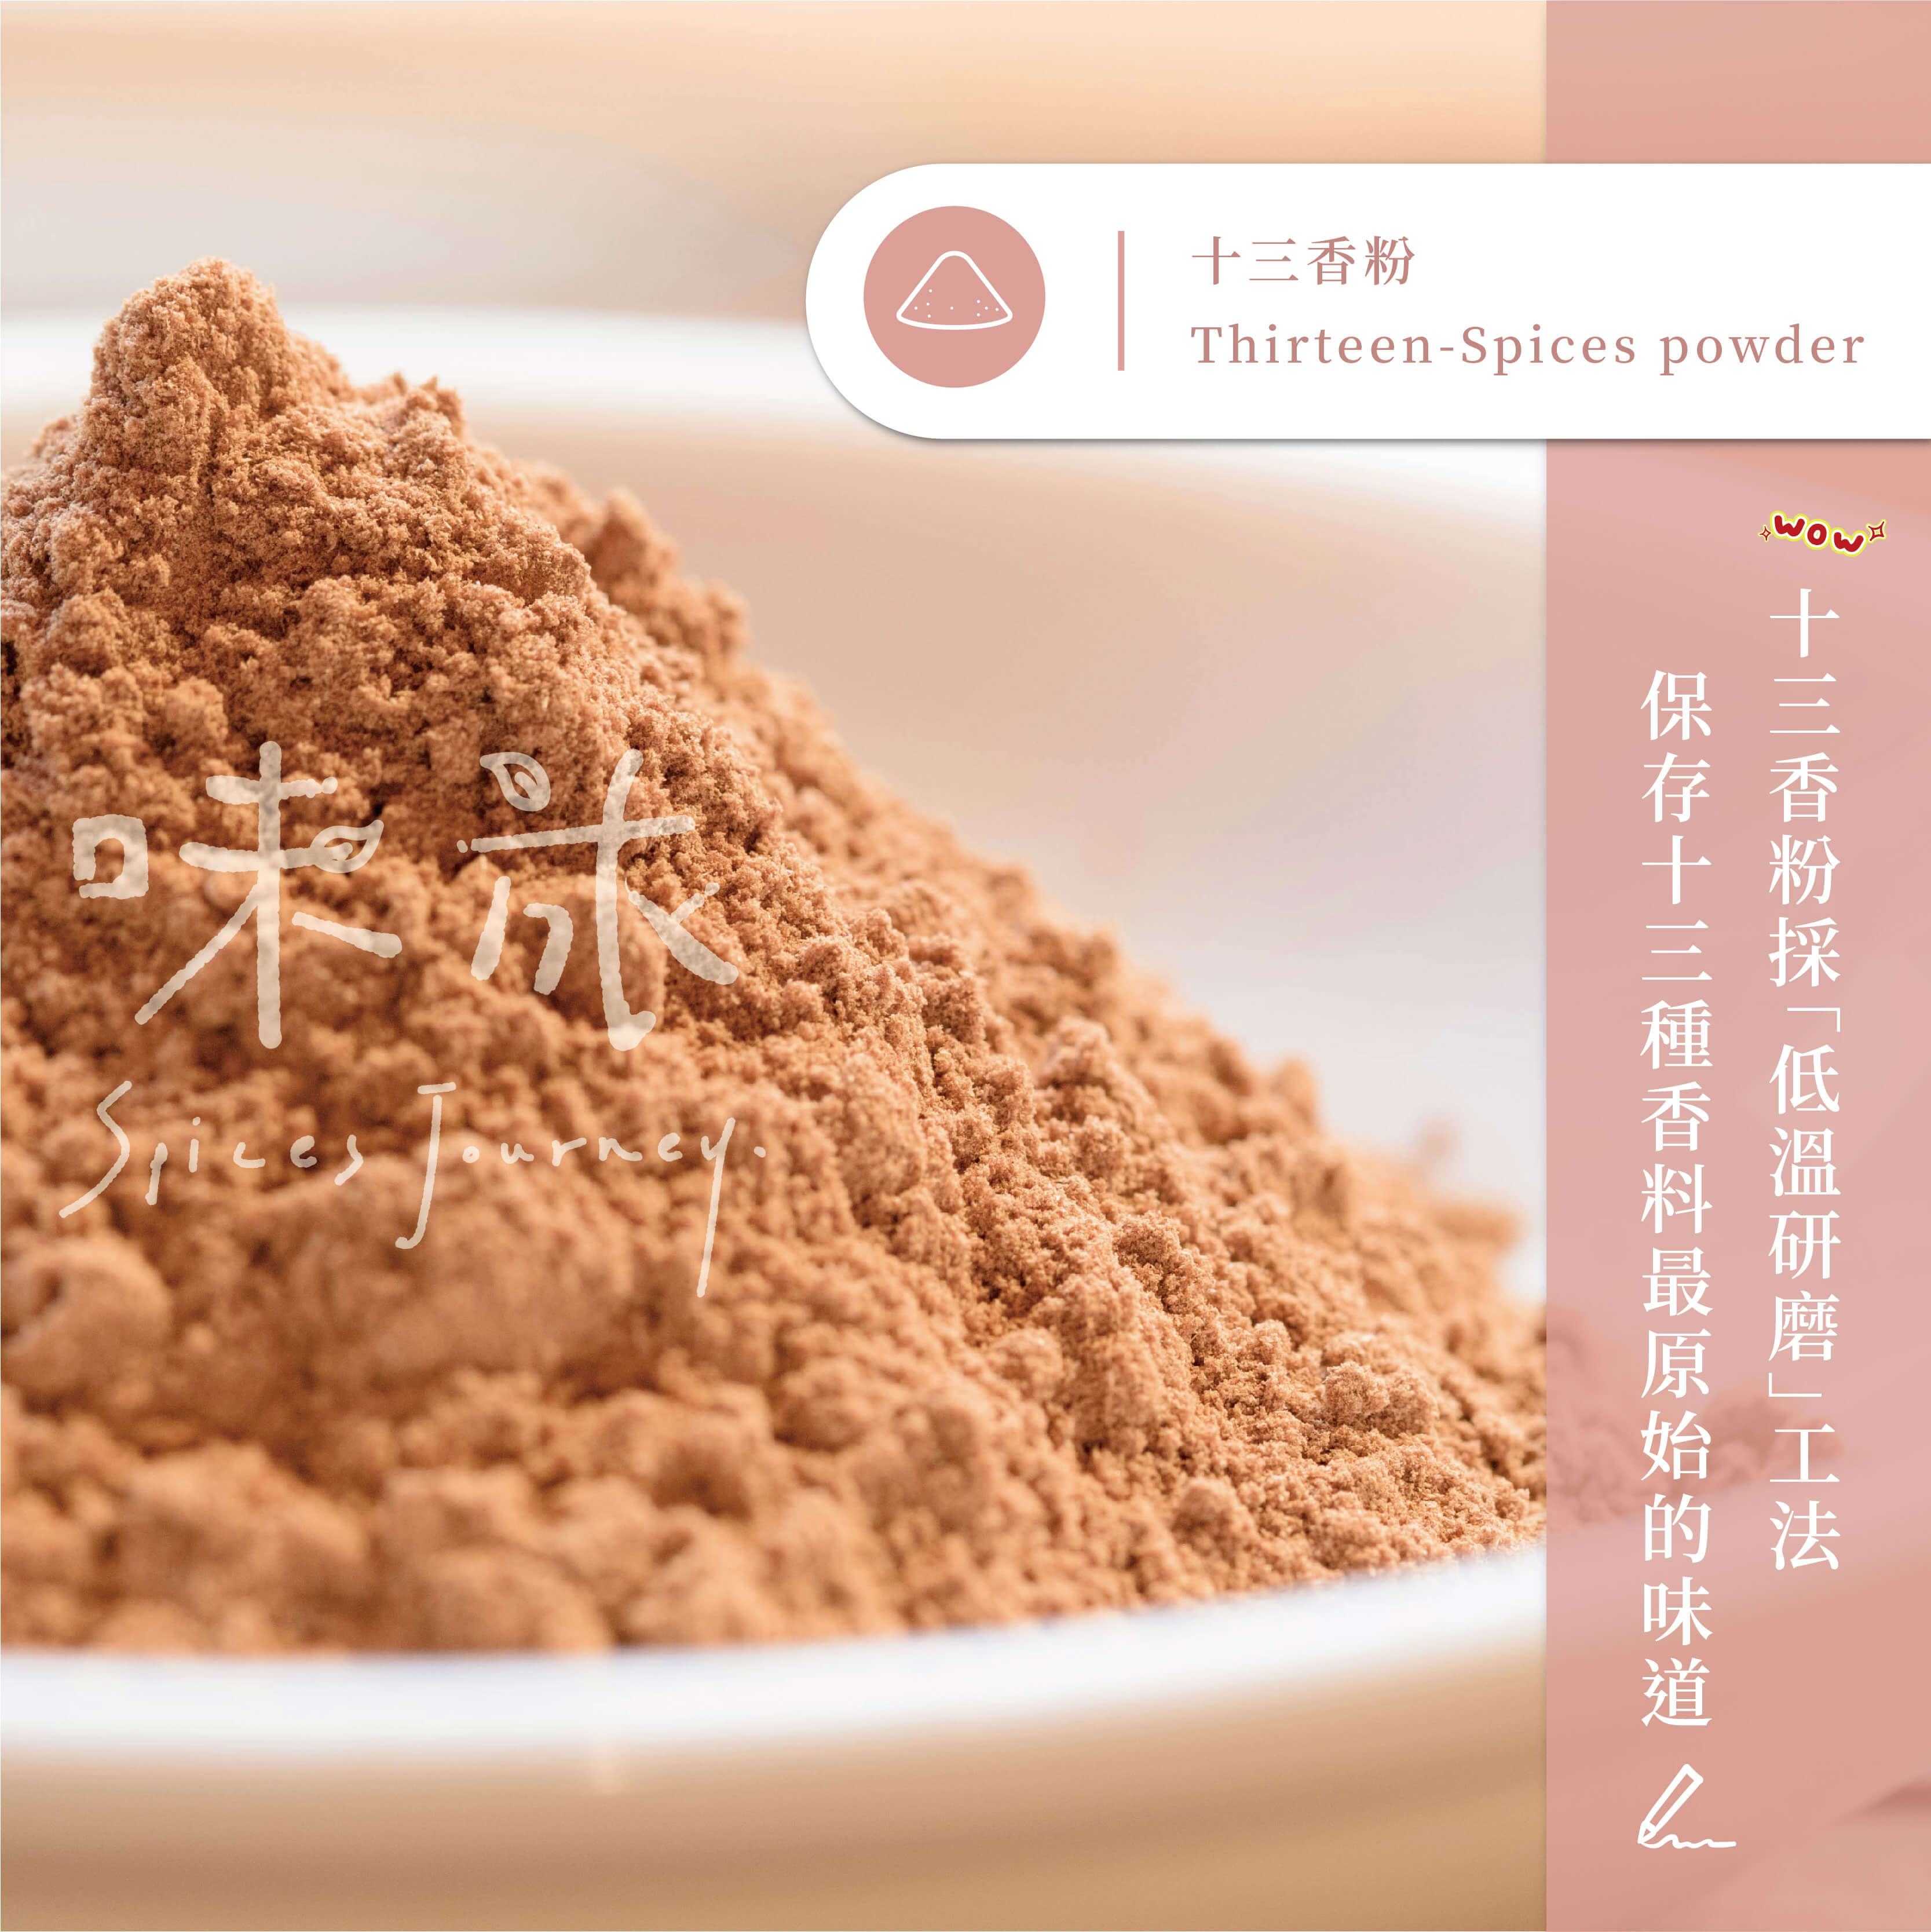 Nutri Pure 13 Spices Powder 33g | 十三香粉